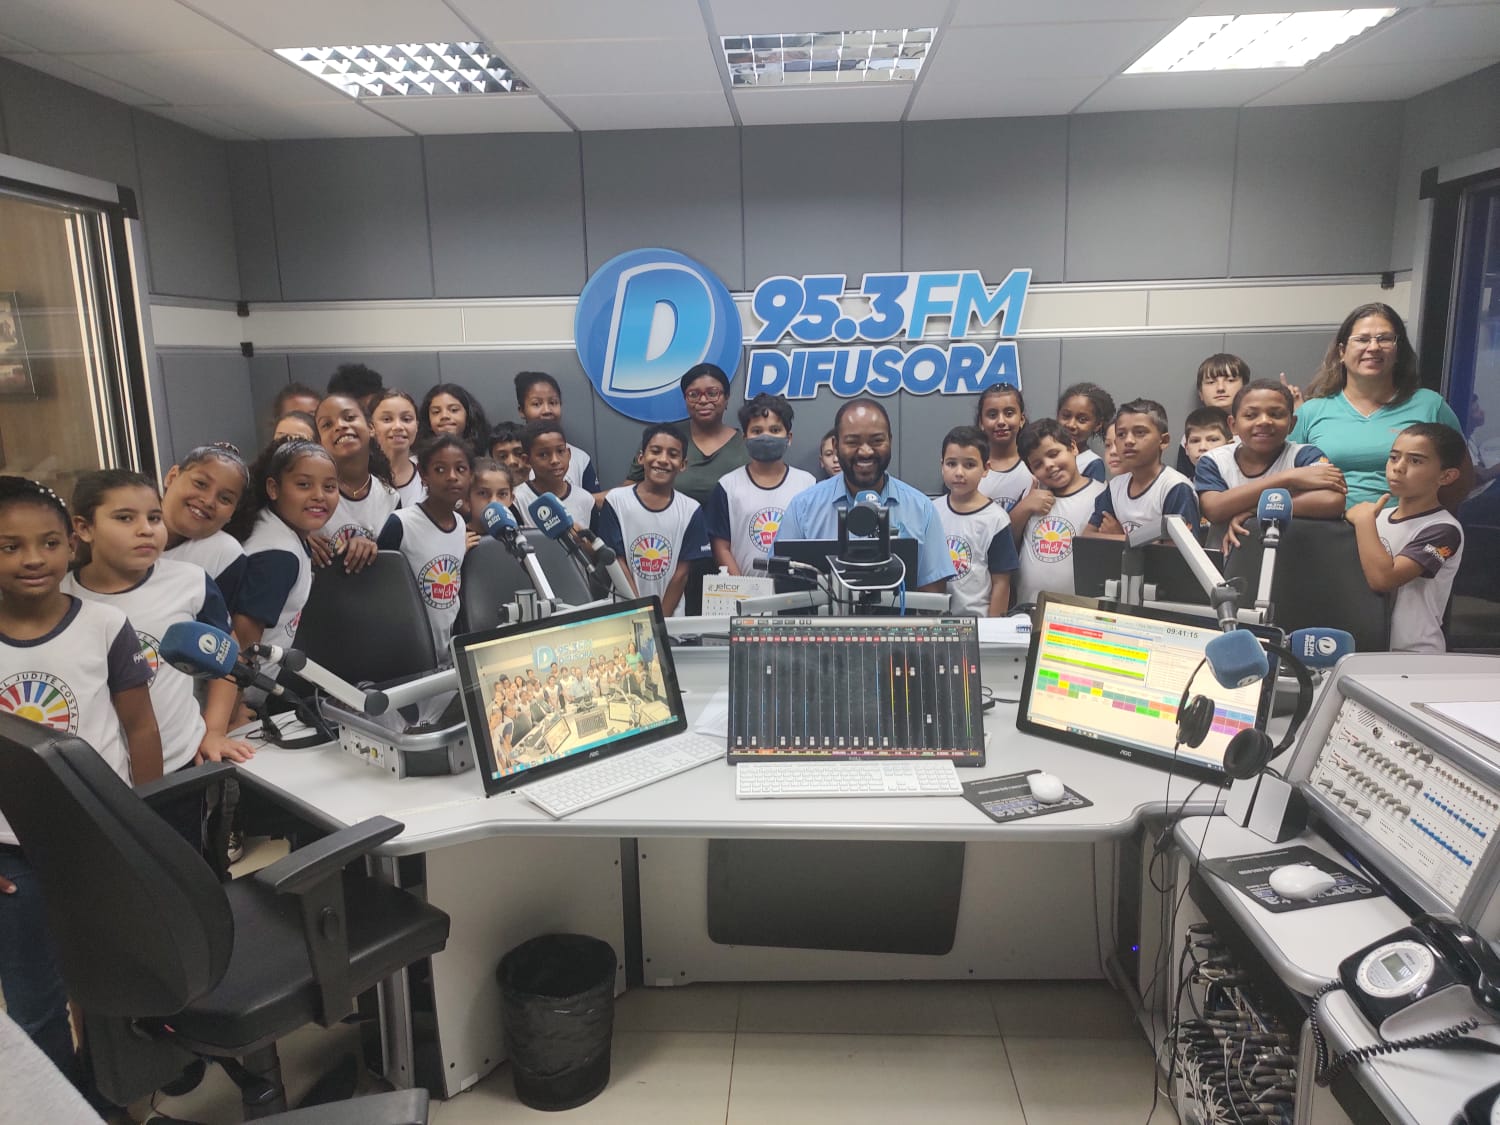 IFTM Campus Patrocínio, lança licitação para concessão da cantina da  instituição - Rádio Difusora FM 95.3